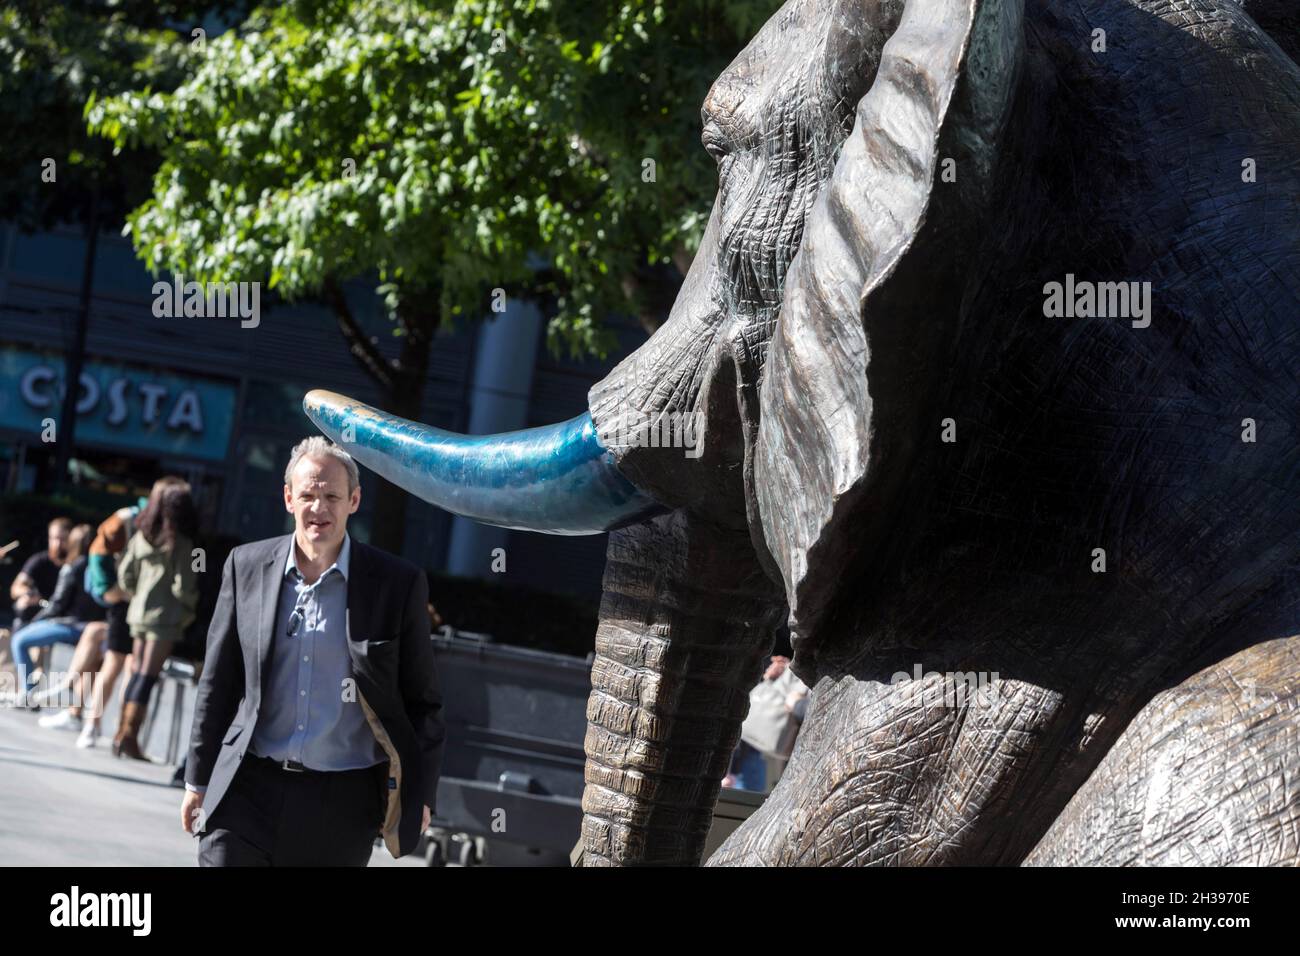 Un uomo si avvicina a una scultura di elefante, parte di mandria di speranza di Gillie e Marc, a Spitalfields, a est di Londra. Foto Stock